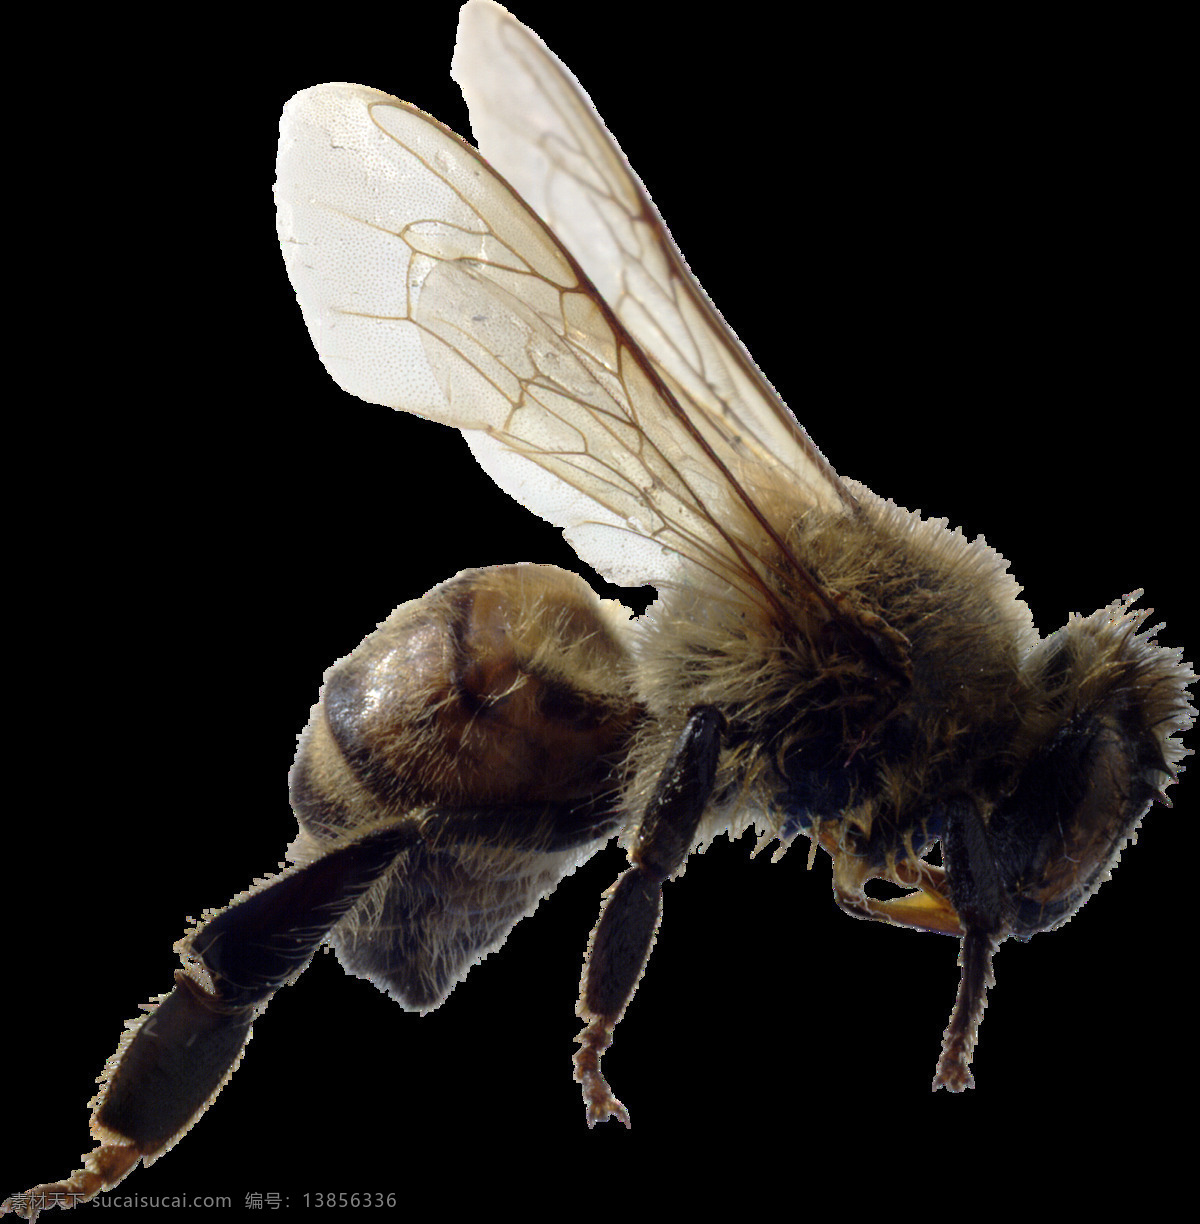 蜜蜂 免 抠 透明 图 层 大全 大图 蜜蜂简笔画 可爱蜜蜂 蜜蜂蜂王图片 蜜蜂高清图片 蜜蜂图片免抠 蜜蜂海报 蜜蜂广告图片 蜜蜂高清大图